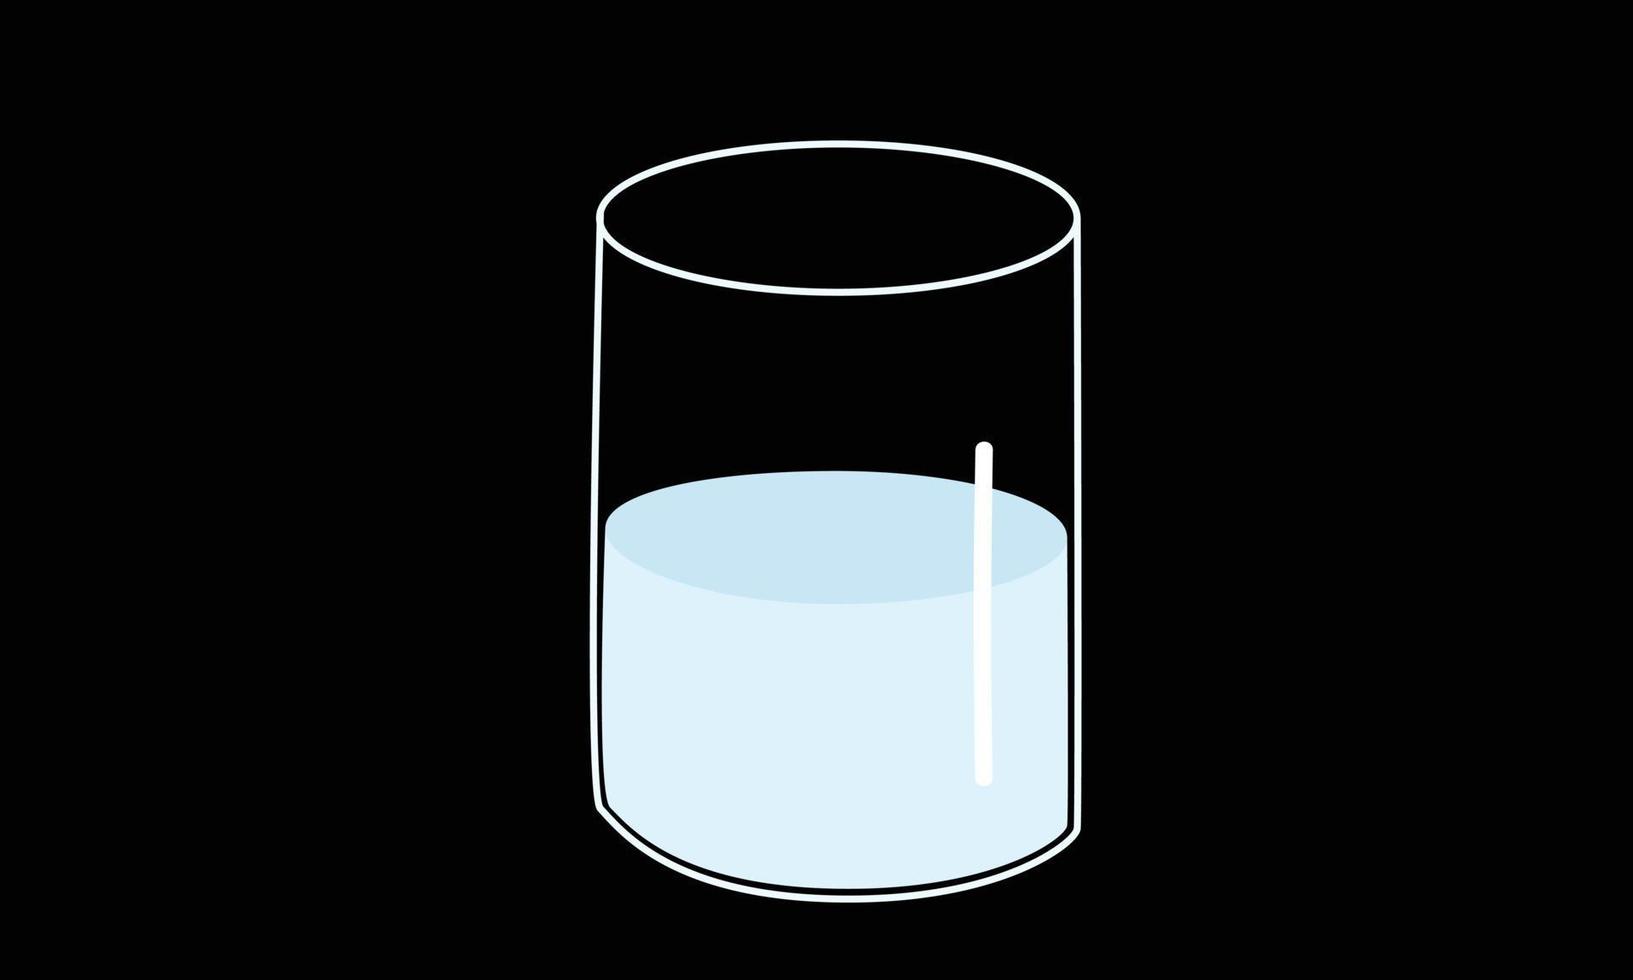 imágenes prediseñadas de vaso de leche. vaso transparente de diseño vectorial de leche aislado en fondo negro. simple vaso de leche lindo dibujo estilo garabato. estilo de dibujos animados de concepto de productos lácteos vector